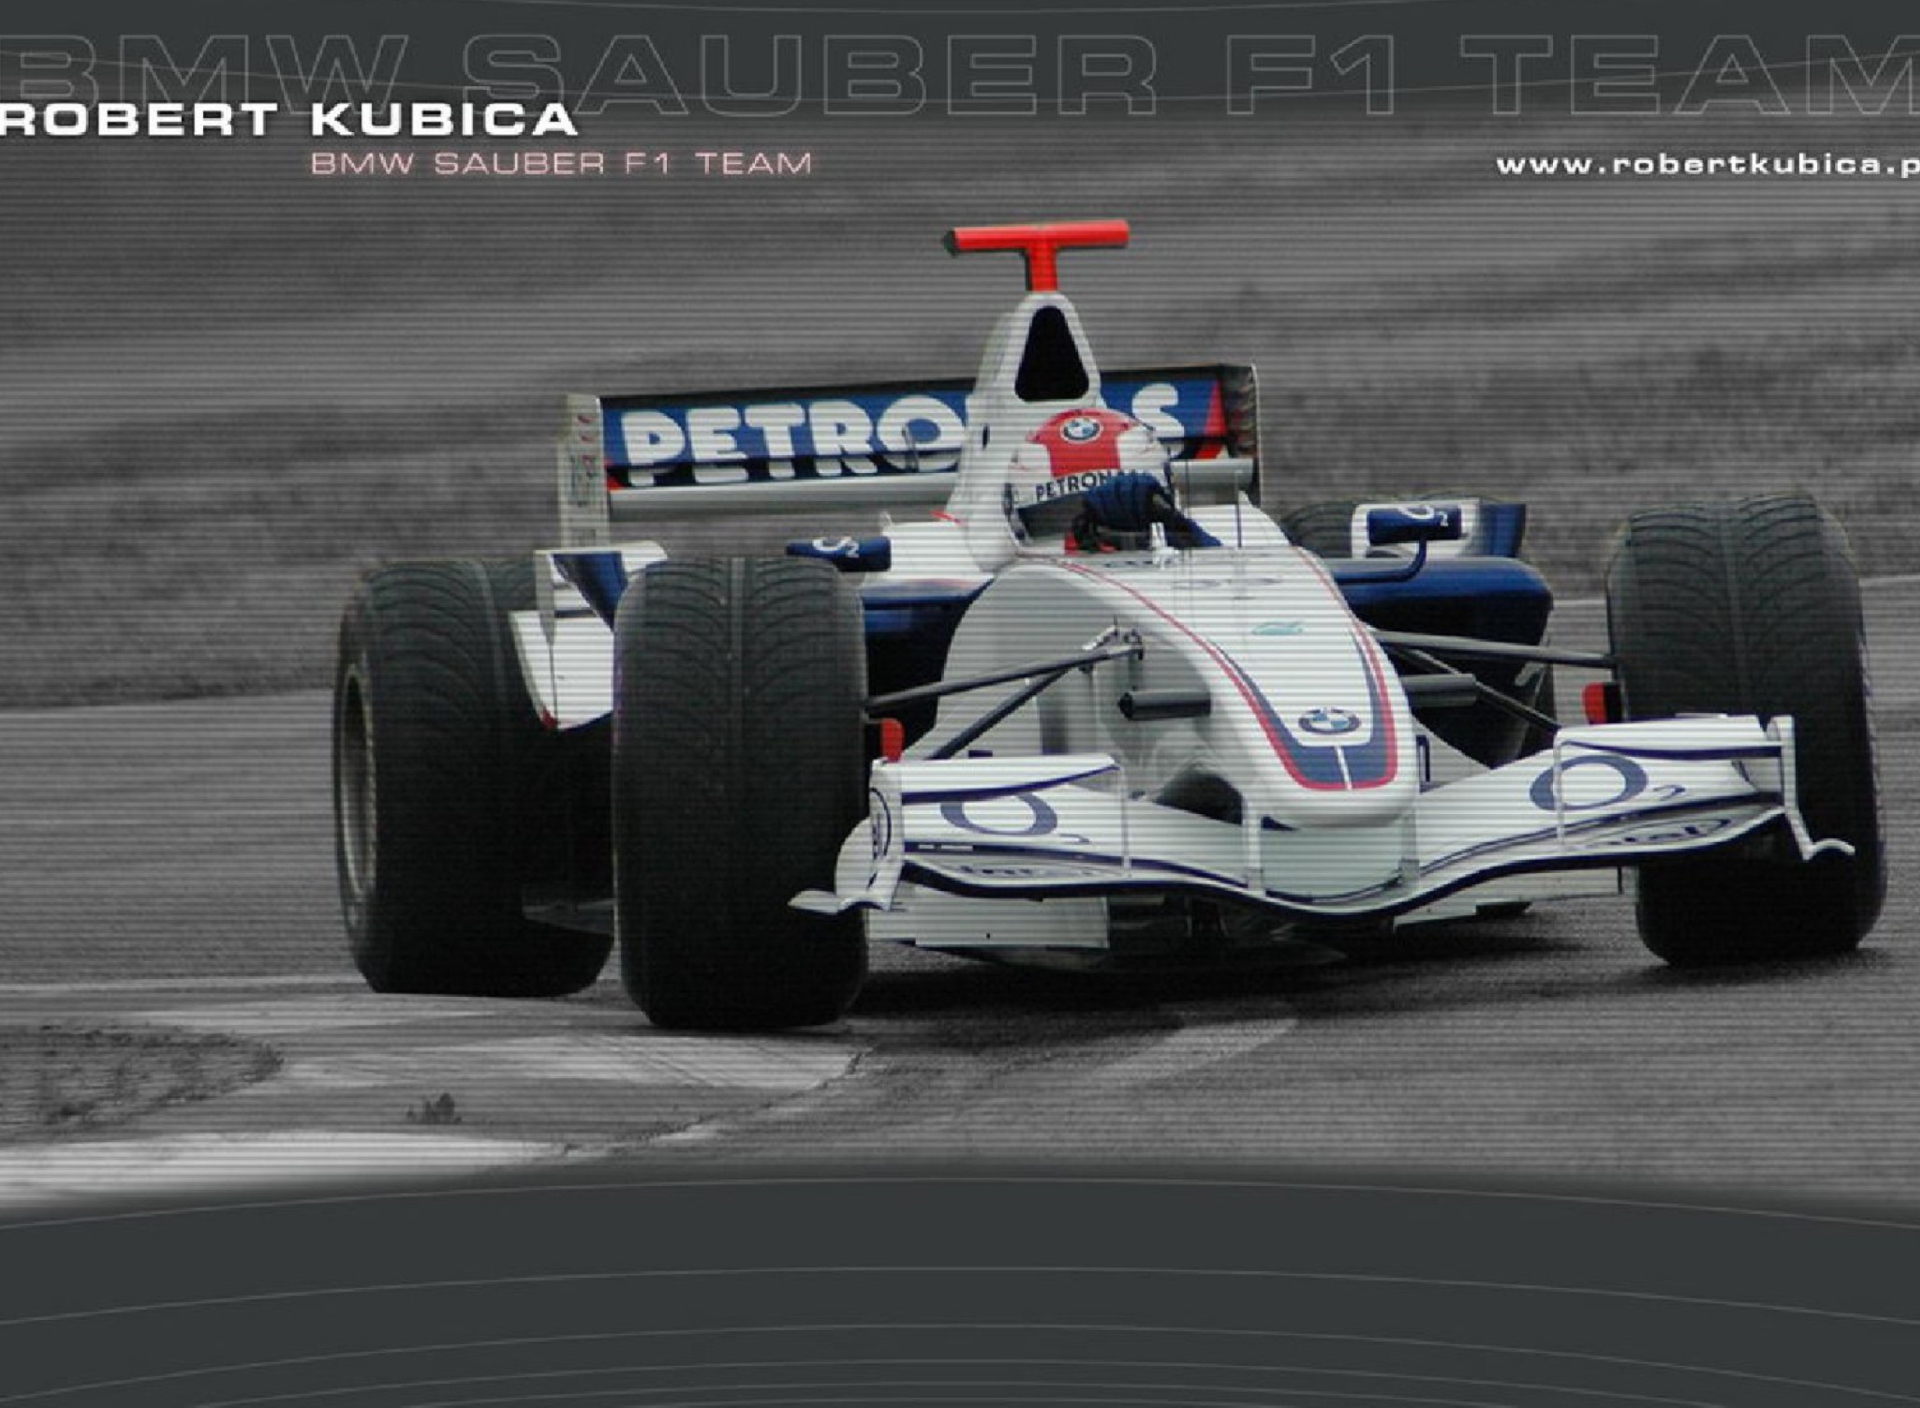 Das Robert Kubica - Formula1 Wallpaper 1920x1408